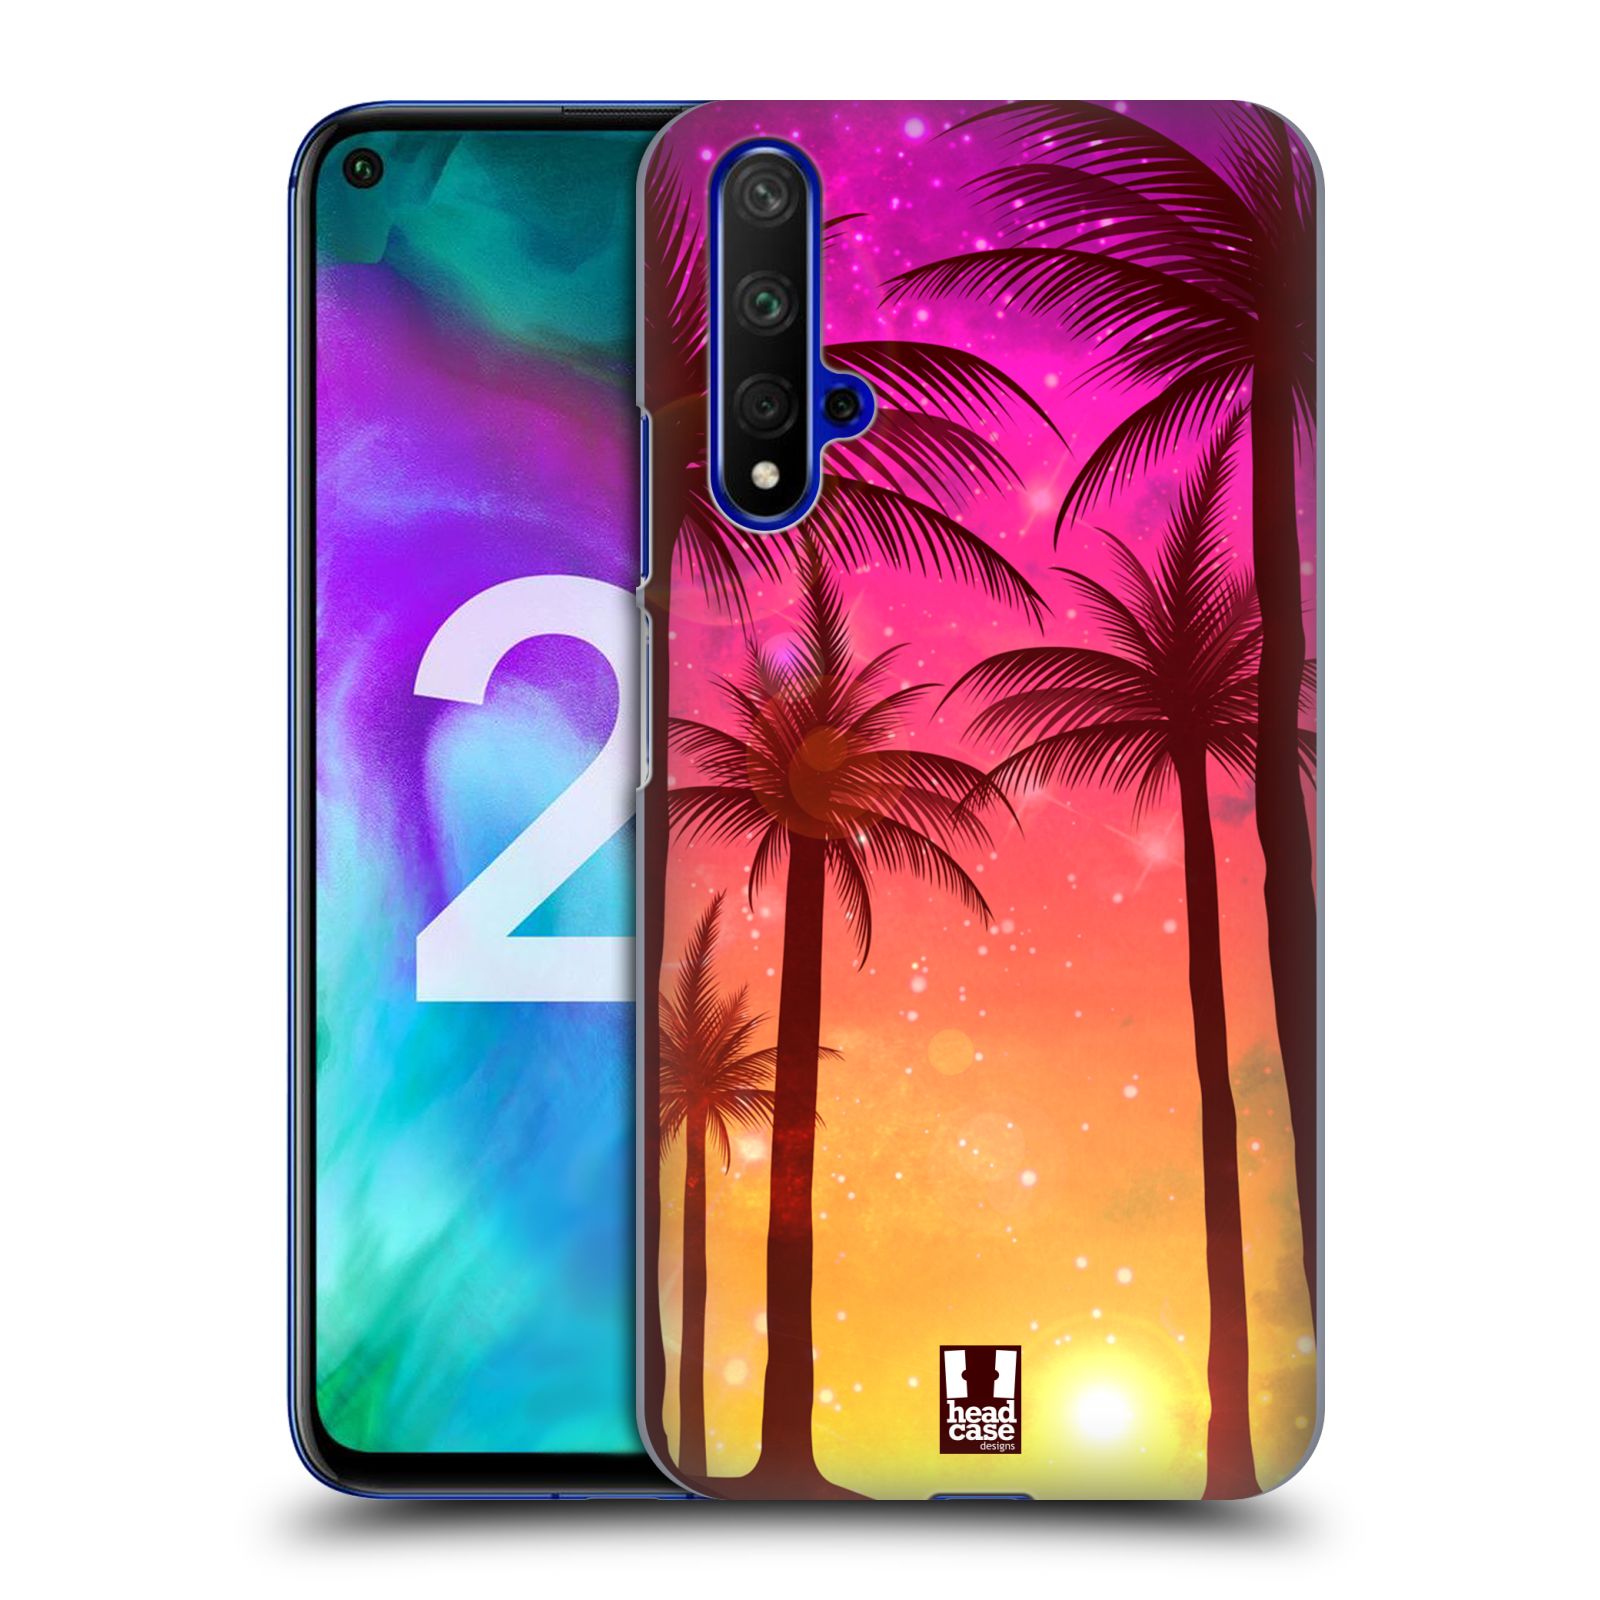 Pouzdro na mobil Honor 20 - HEAD CASE - vzor Kreslený motiv silueta moře a palmy RŮŽOVÁ